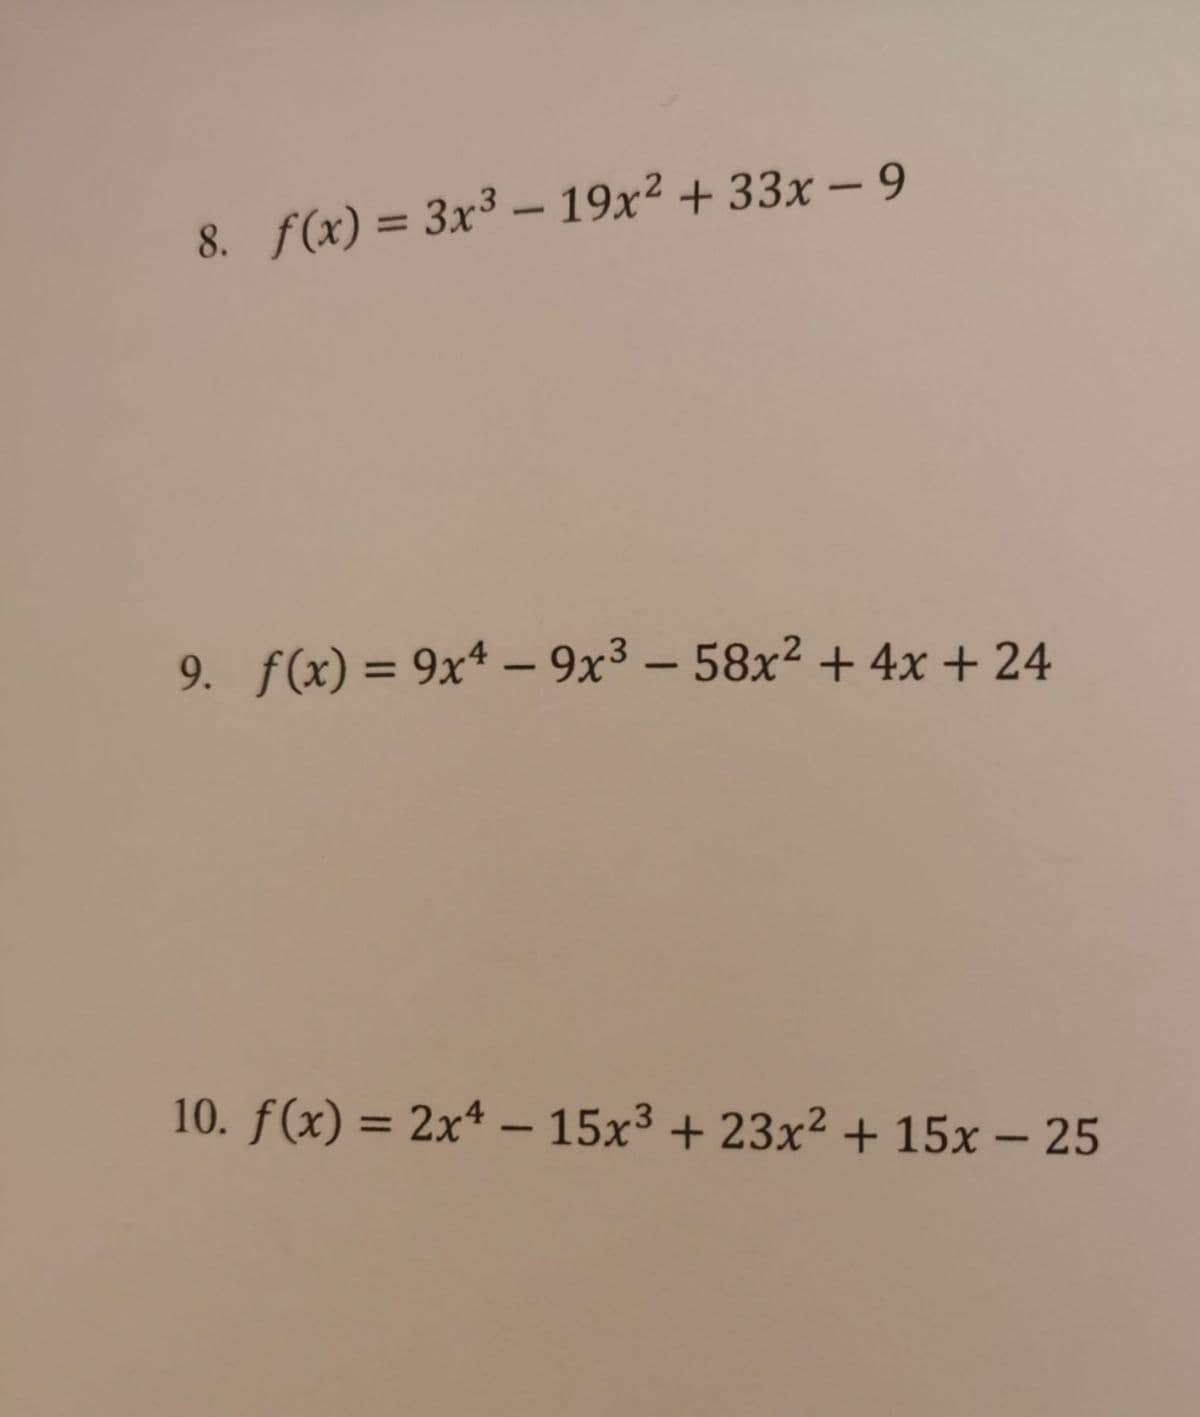 8. f(x) = 3x³ – 19x² + 33x - 9
%3D
9. f(x) = 9x* – 9x3 – 58x² + 4x + 24
%3D
-
10. f(x) = 2x4 – 15x³ + 23x² + 15x – 25
-
-
